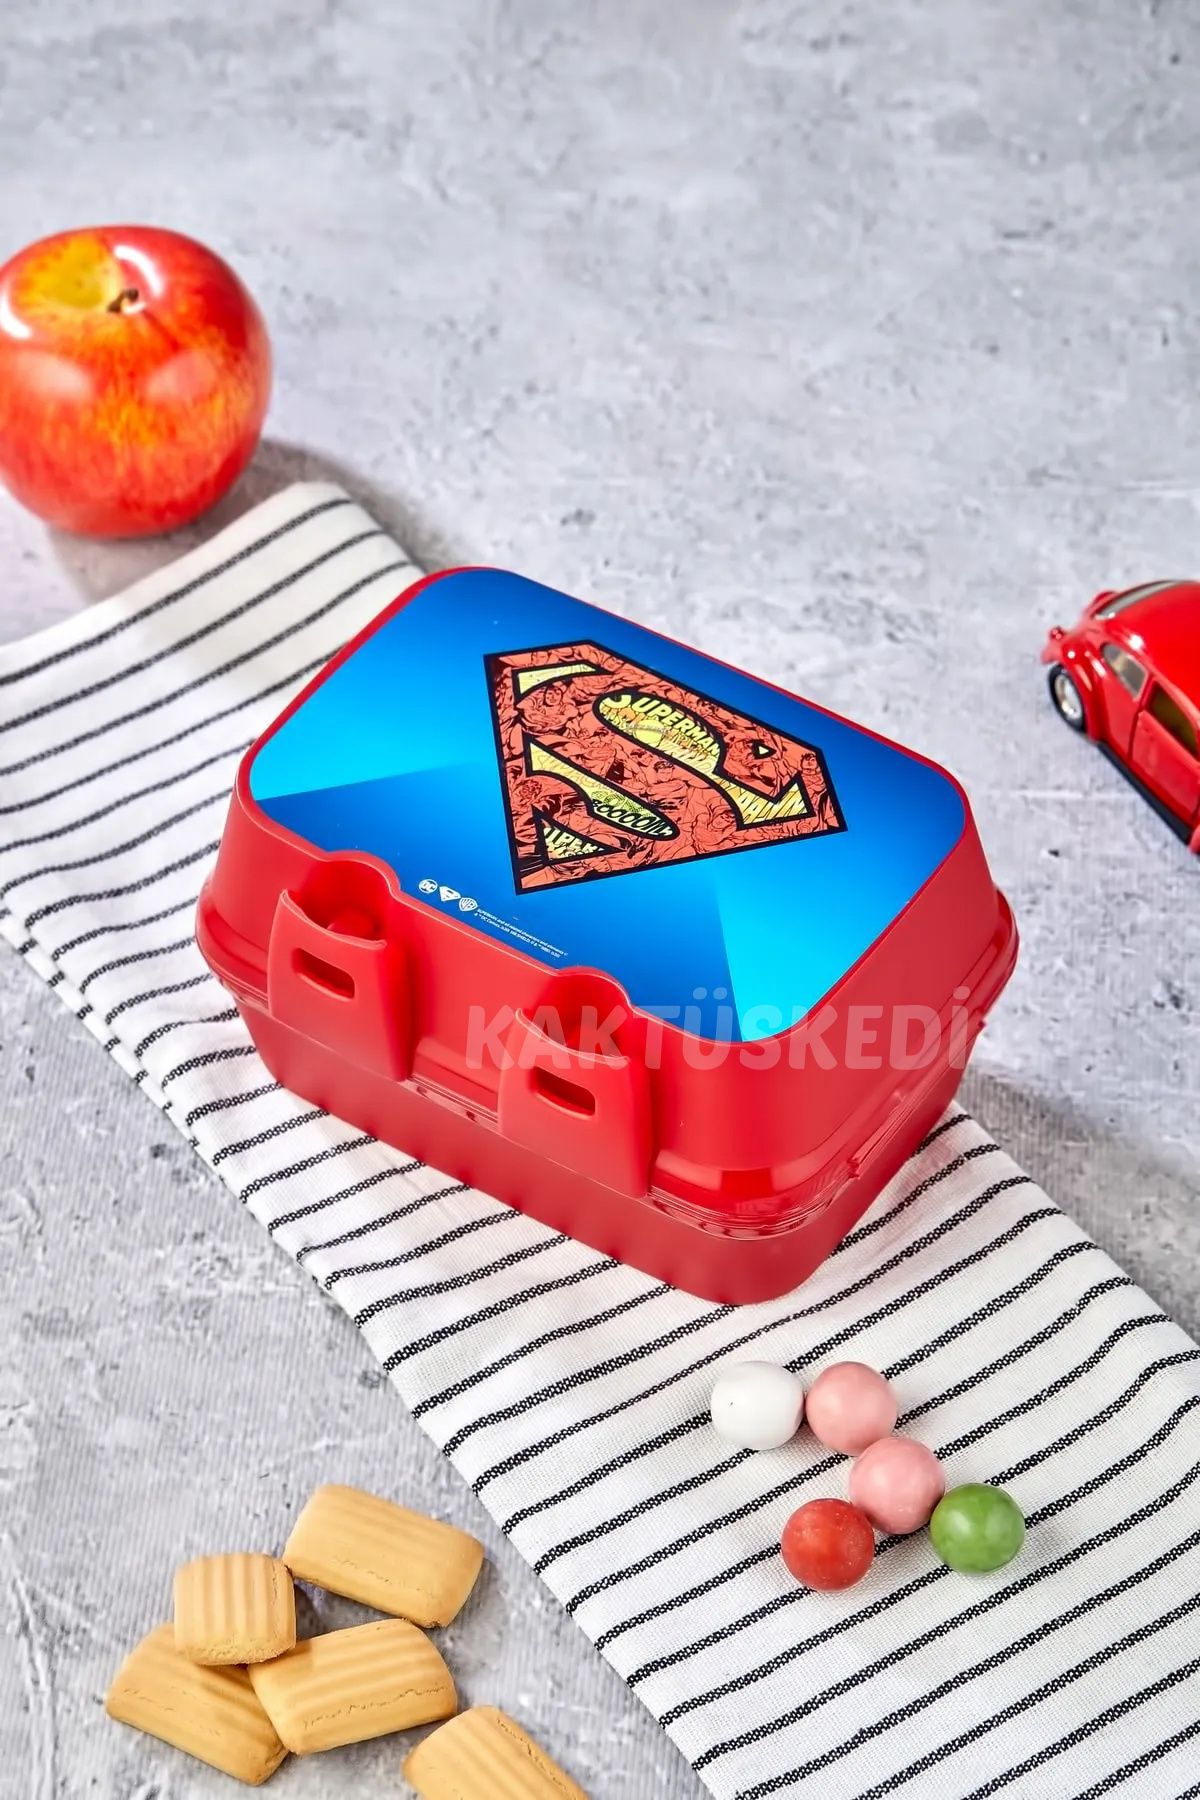 KaktüsKedi Superman Okul Beslenme Çantası Beslenme Kutusu